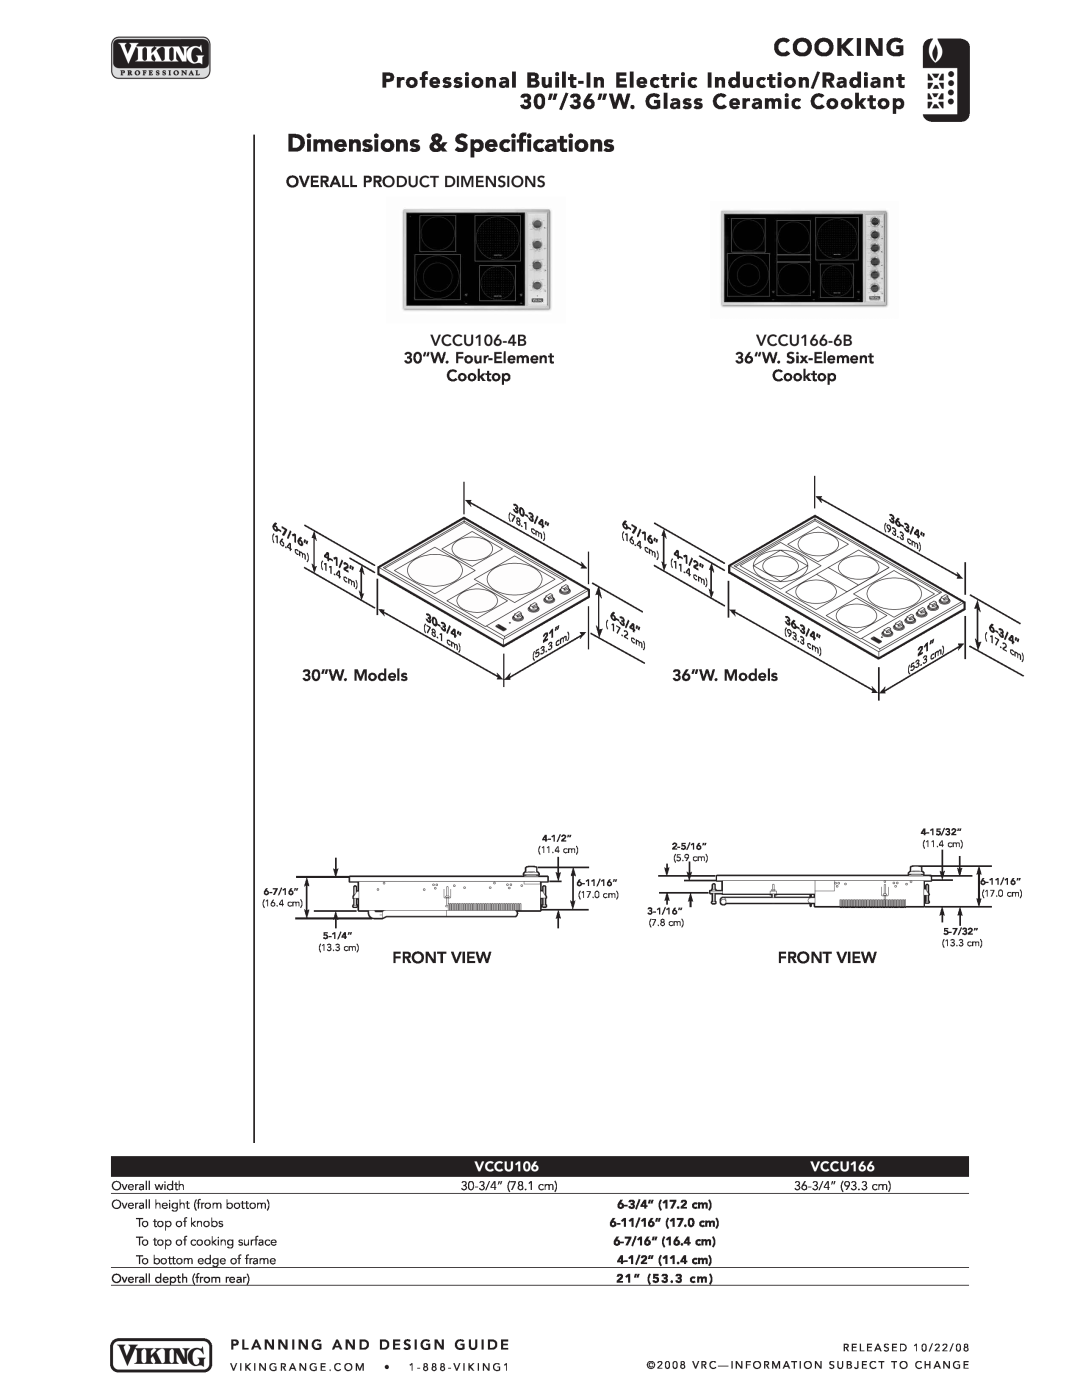 Viking VCCU166-6B manual Dimensions & Specifications, Cooking, VCCU106, 6-3/4” 17.2 cm, 6-11/16” 17.0 cm, 6-7/16” 16.4 cm 